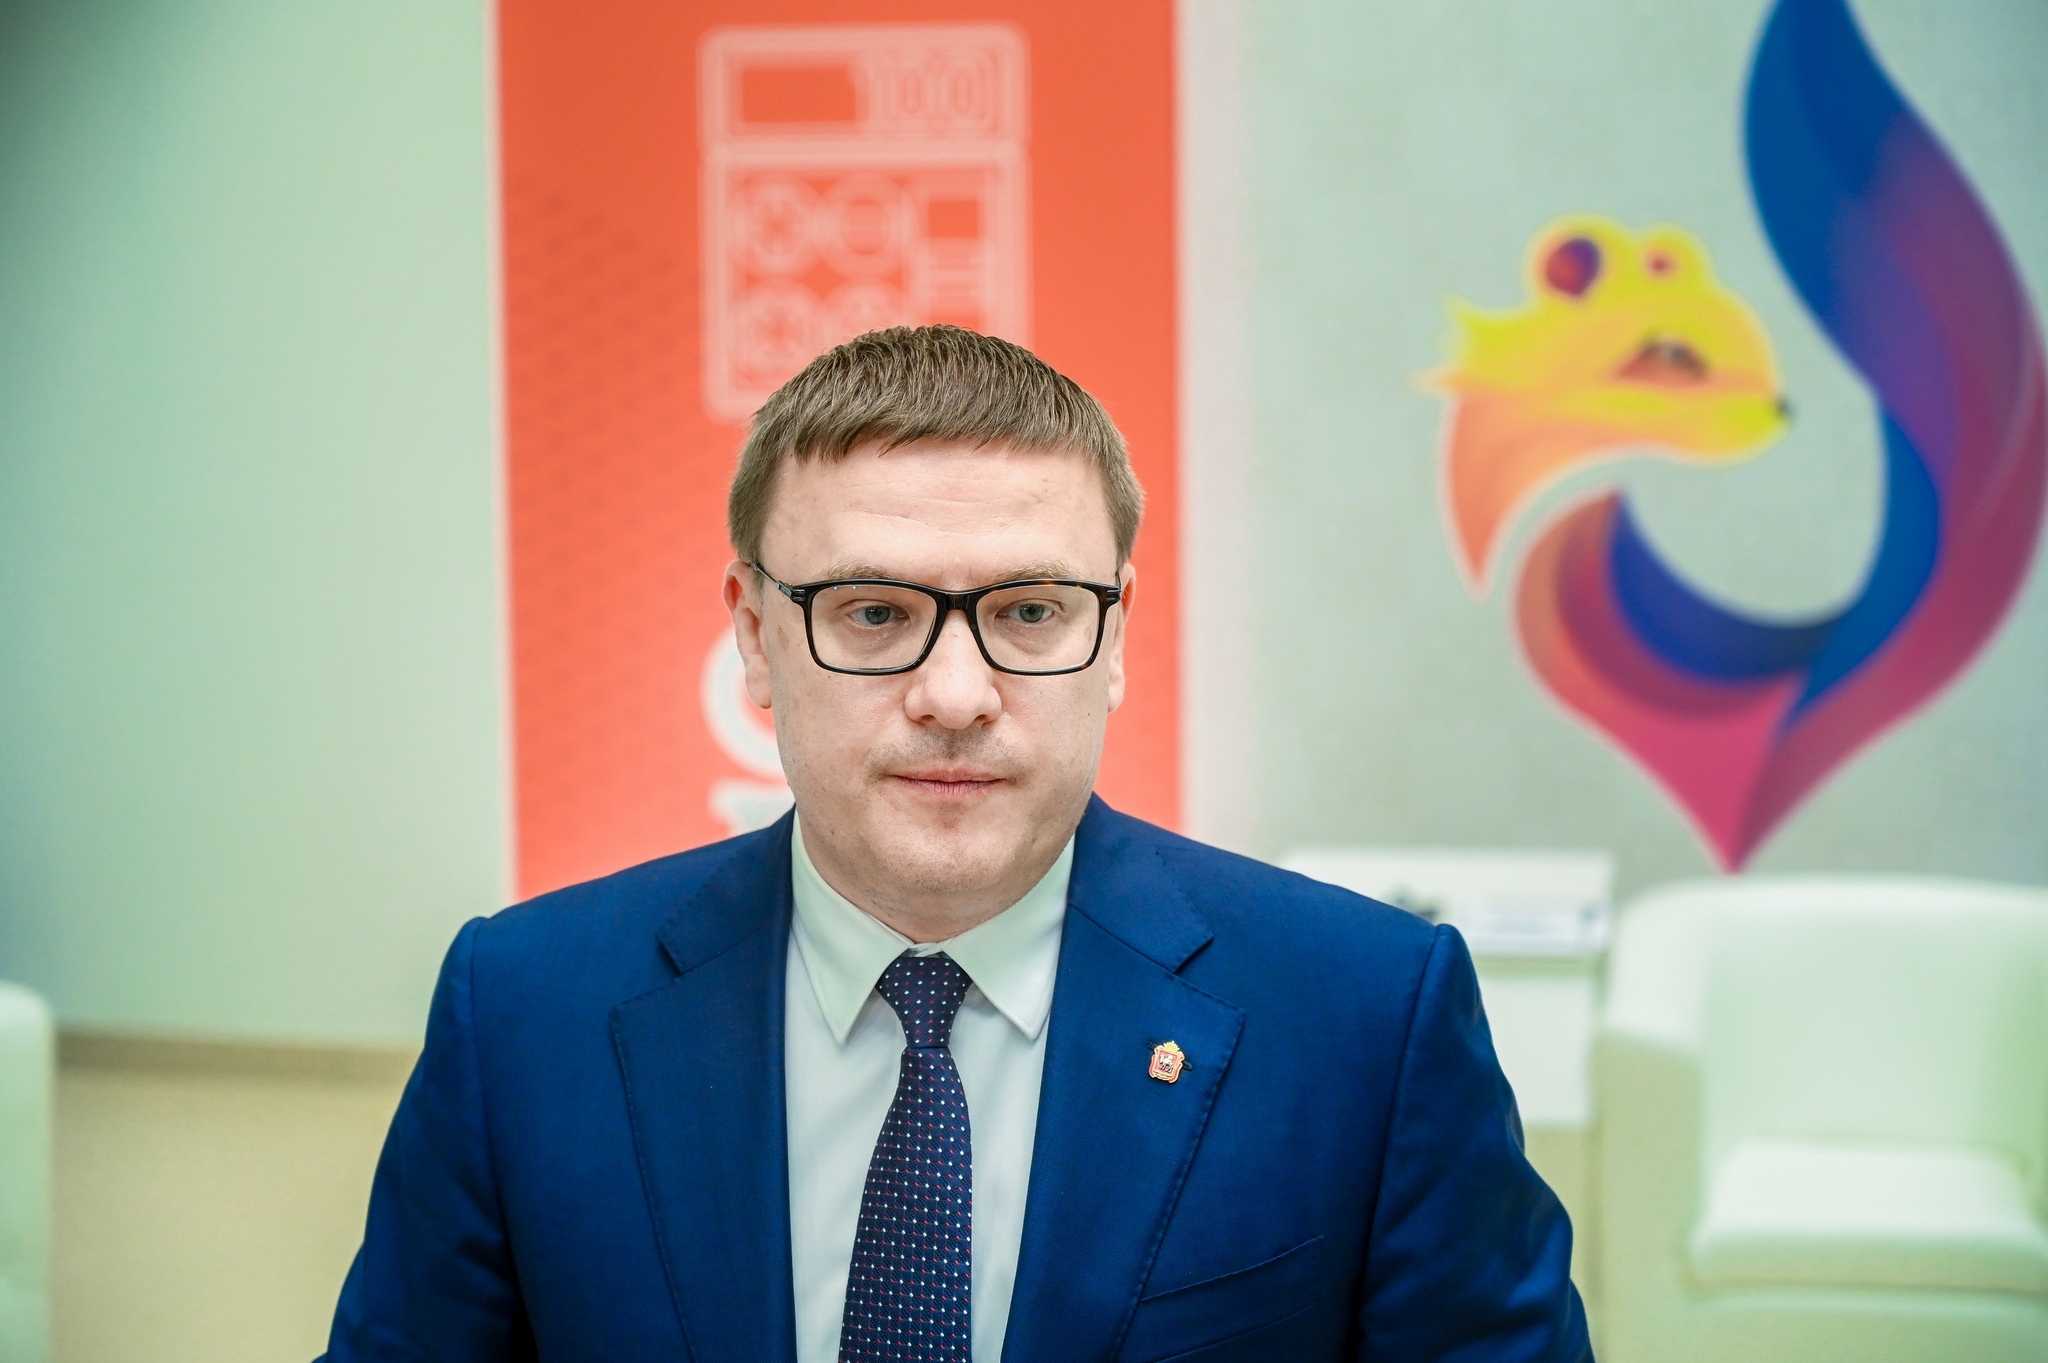 Алексей Текслер вошел в ТОП-15 самых популярных губернаторов в Телеграме